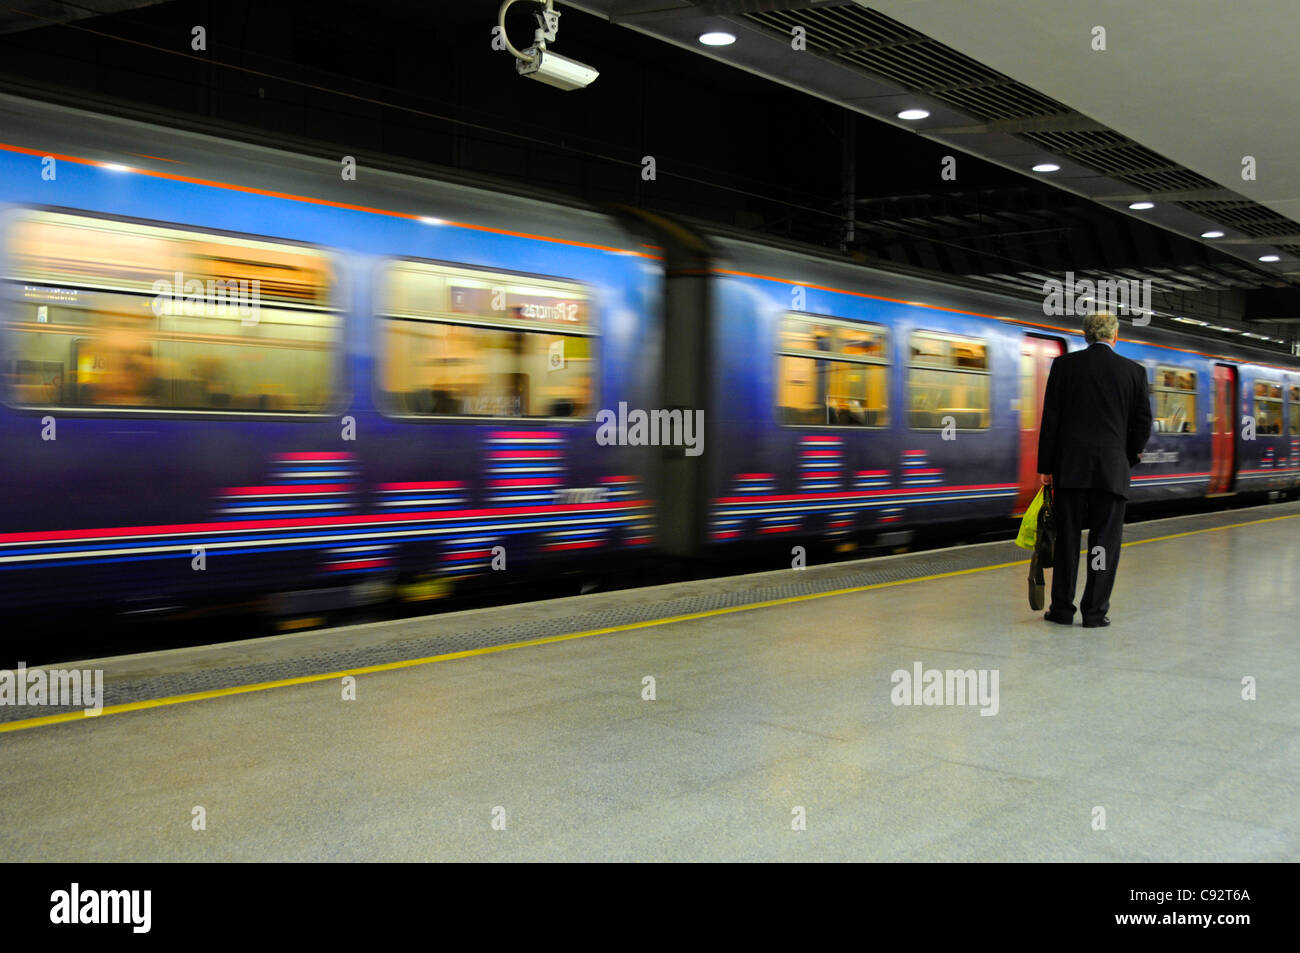 Movimiento borroso del primer tren y plataforma de Capital Connect en la estación de bajo nivel de St Pancras International que sirve a Thameslink en Londres, Inglaterra, Reino Unido Foto de stock